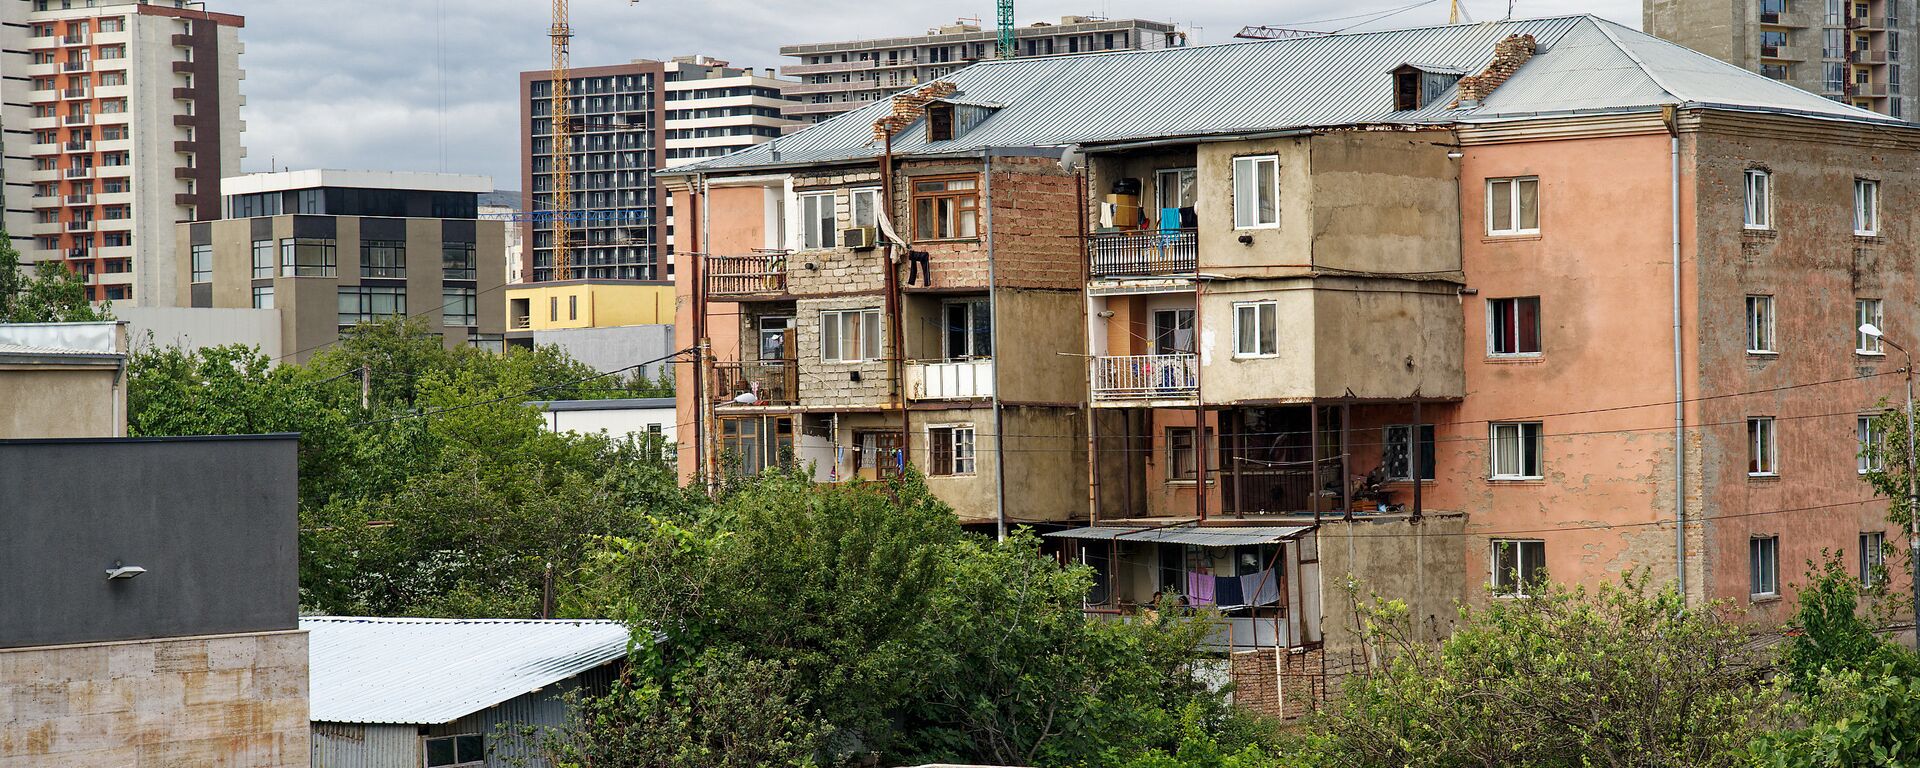 Строительство новых жилых домов в районе Диди Дигоми в Тбилиси - Sputnik Грузия, 1920, 01.09.2021